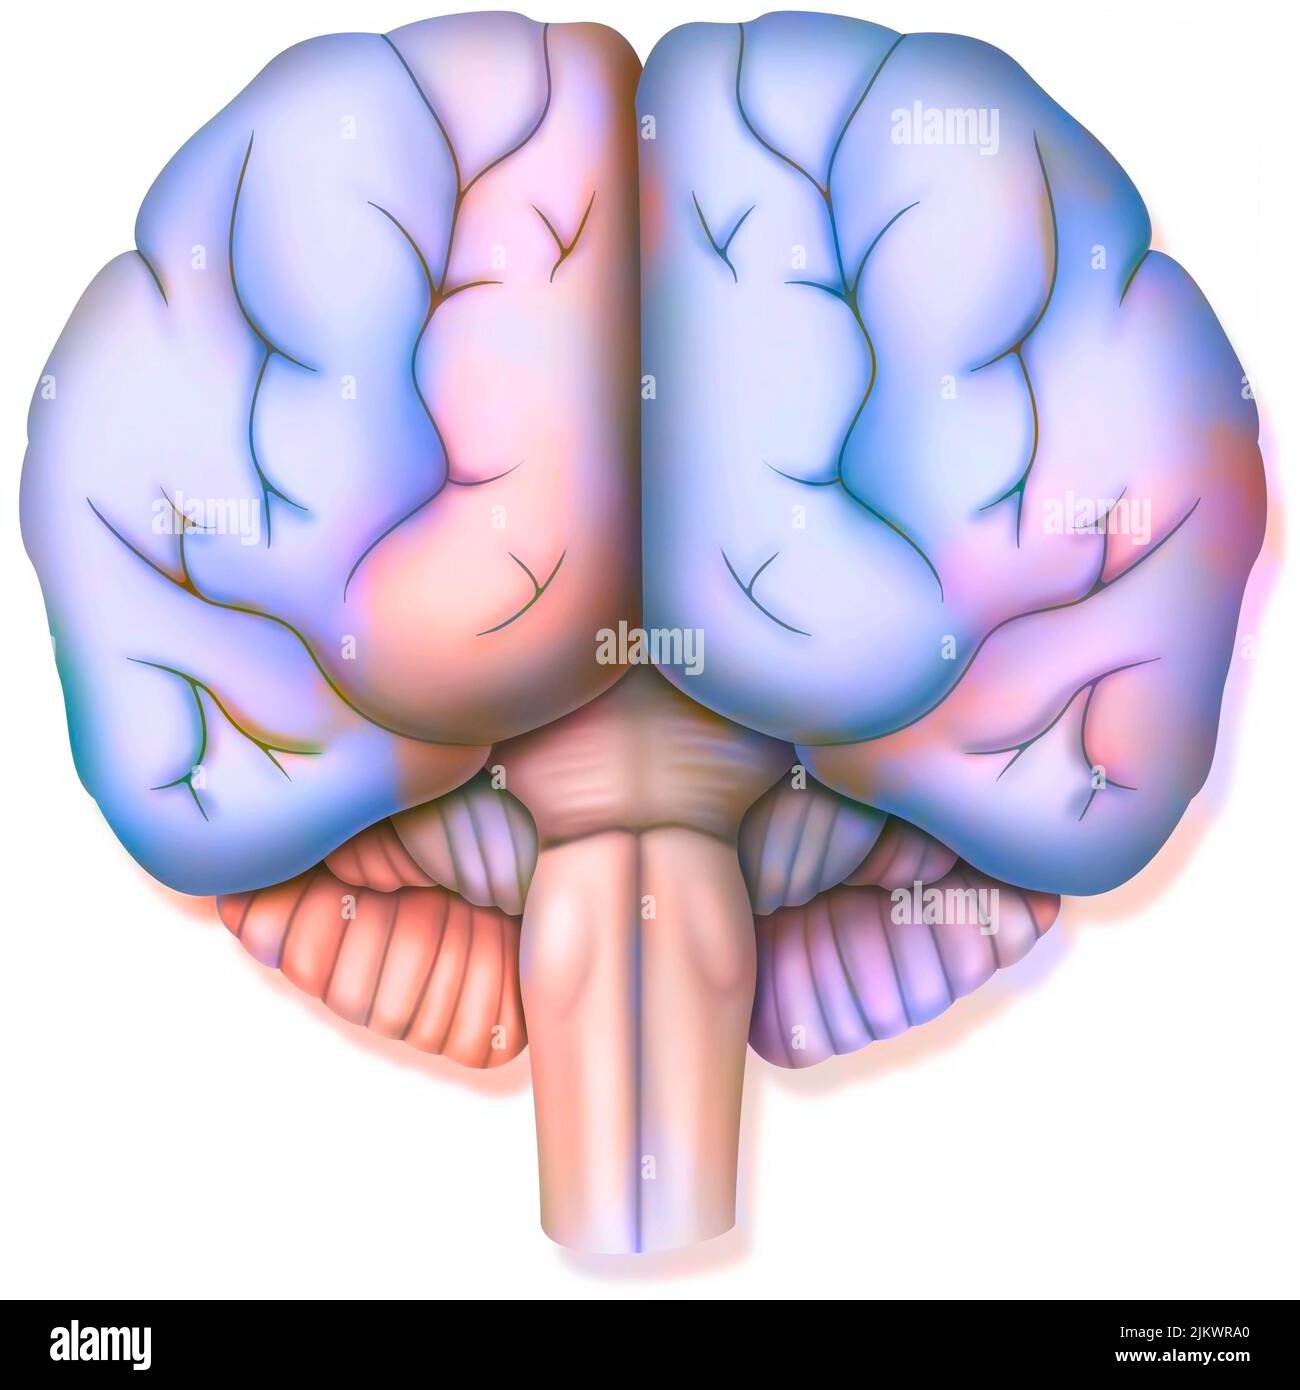 Cervello, con i due emisferi cerebrali, il cervelletto e il tronco cerebrale. Foto Stock